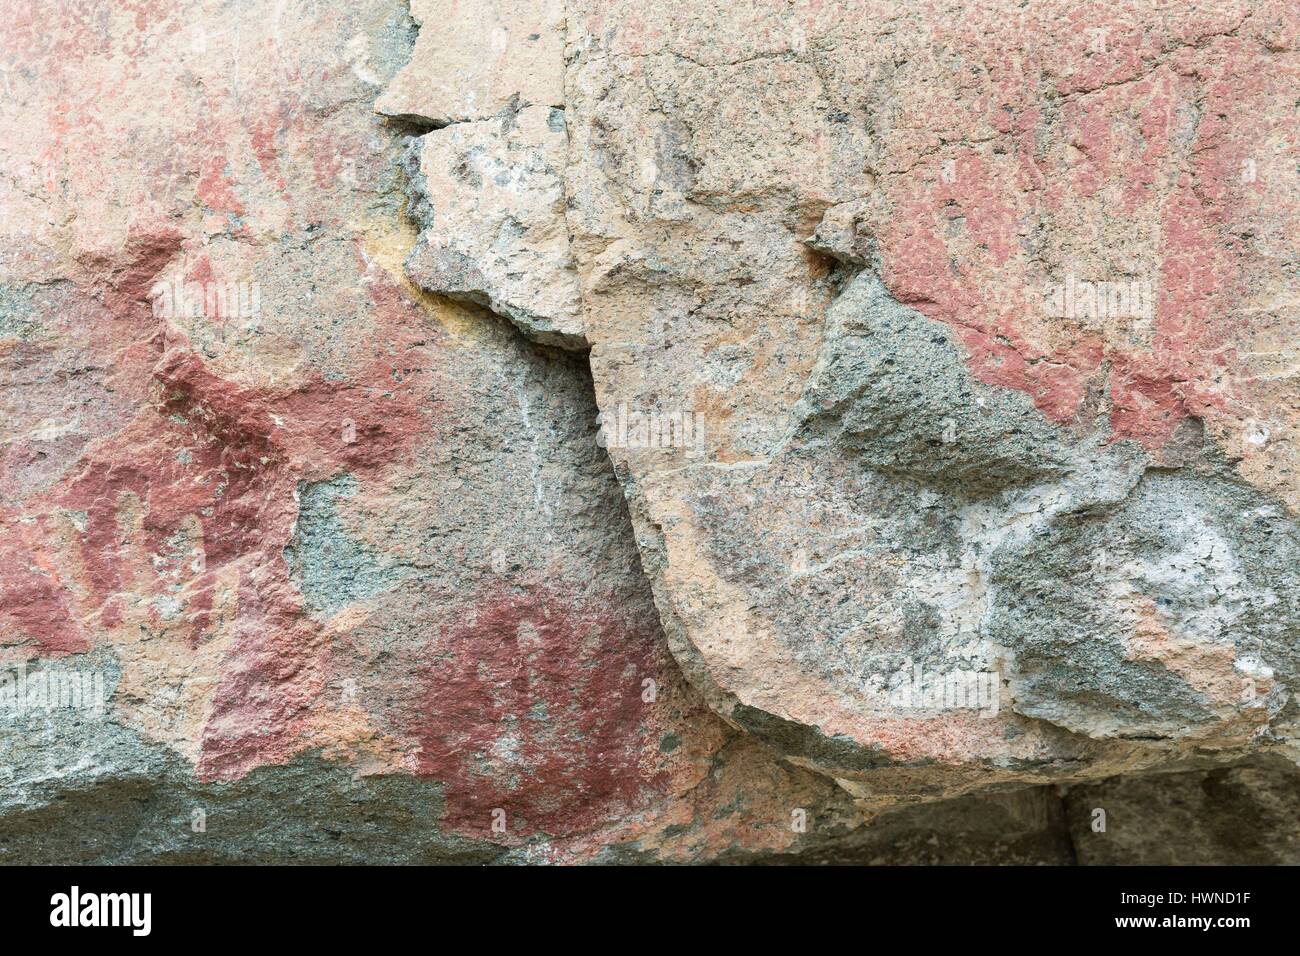 Chile, Patagonia, Aysen region, Villa Cerro Castillo, Carretera Austral, archaeological site El Paredon de las Manos, the Hands wall Stock Photo